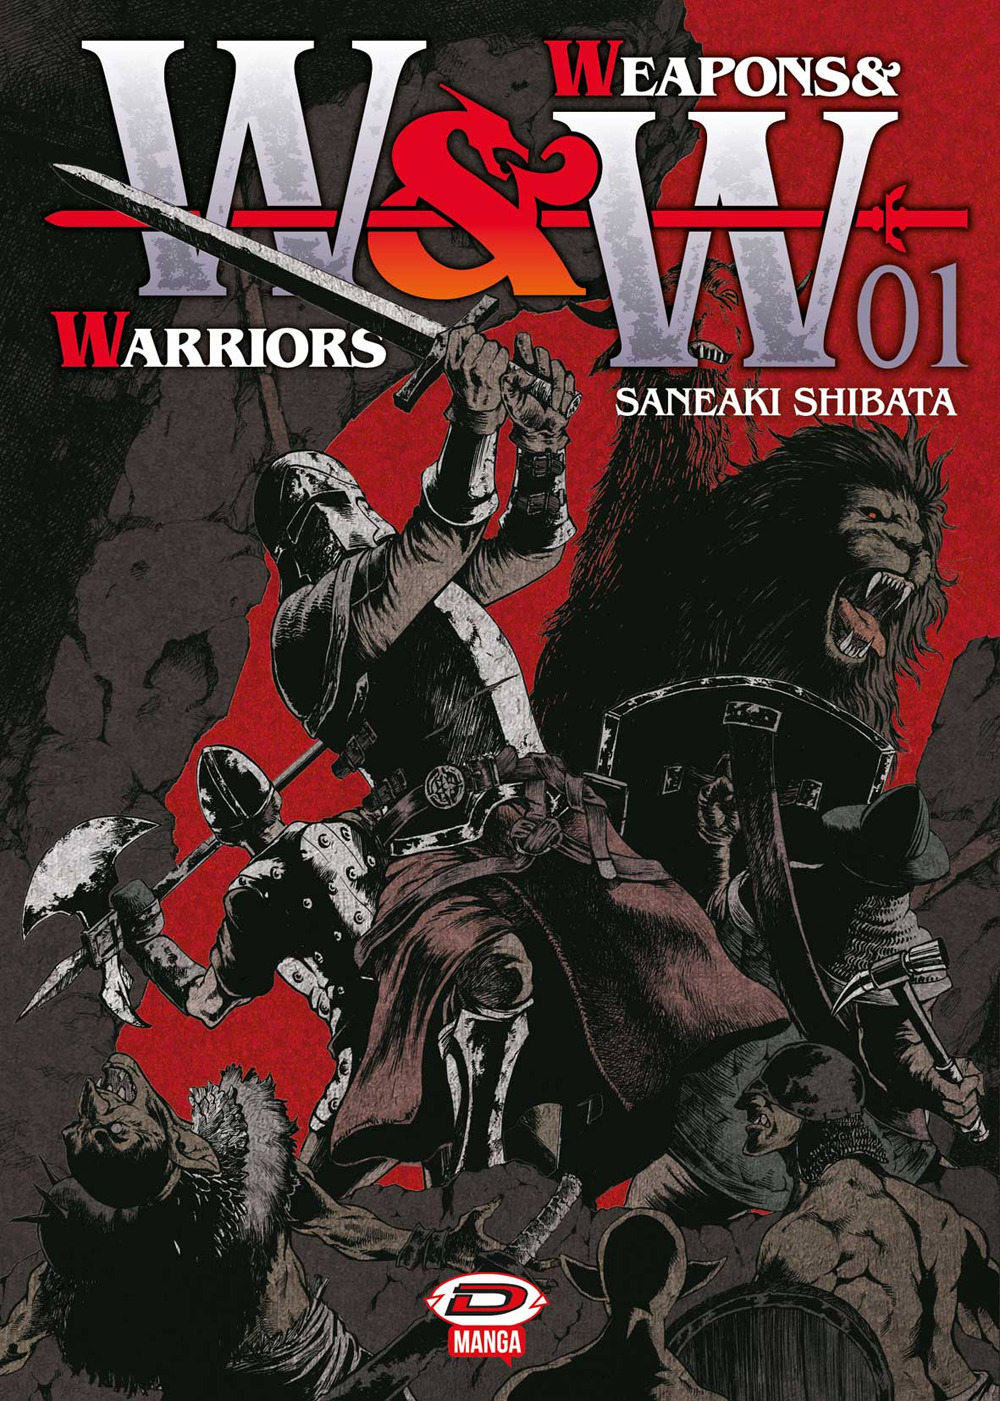 Weapons & warriors. Vol. 1